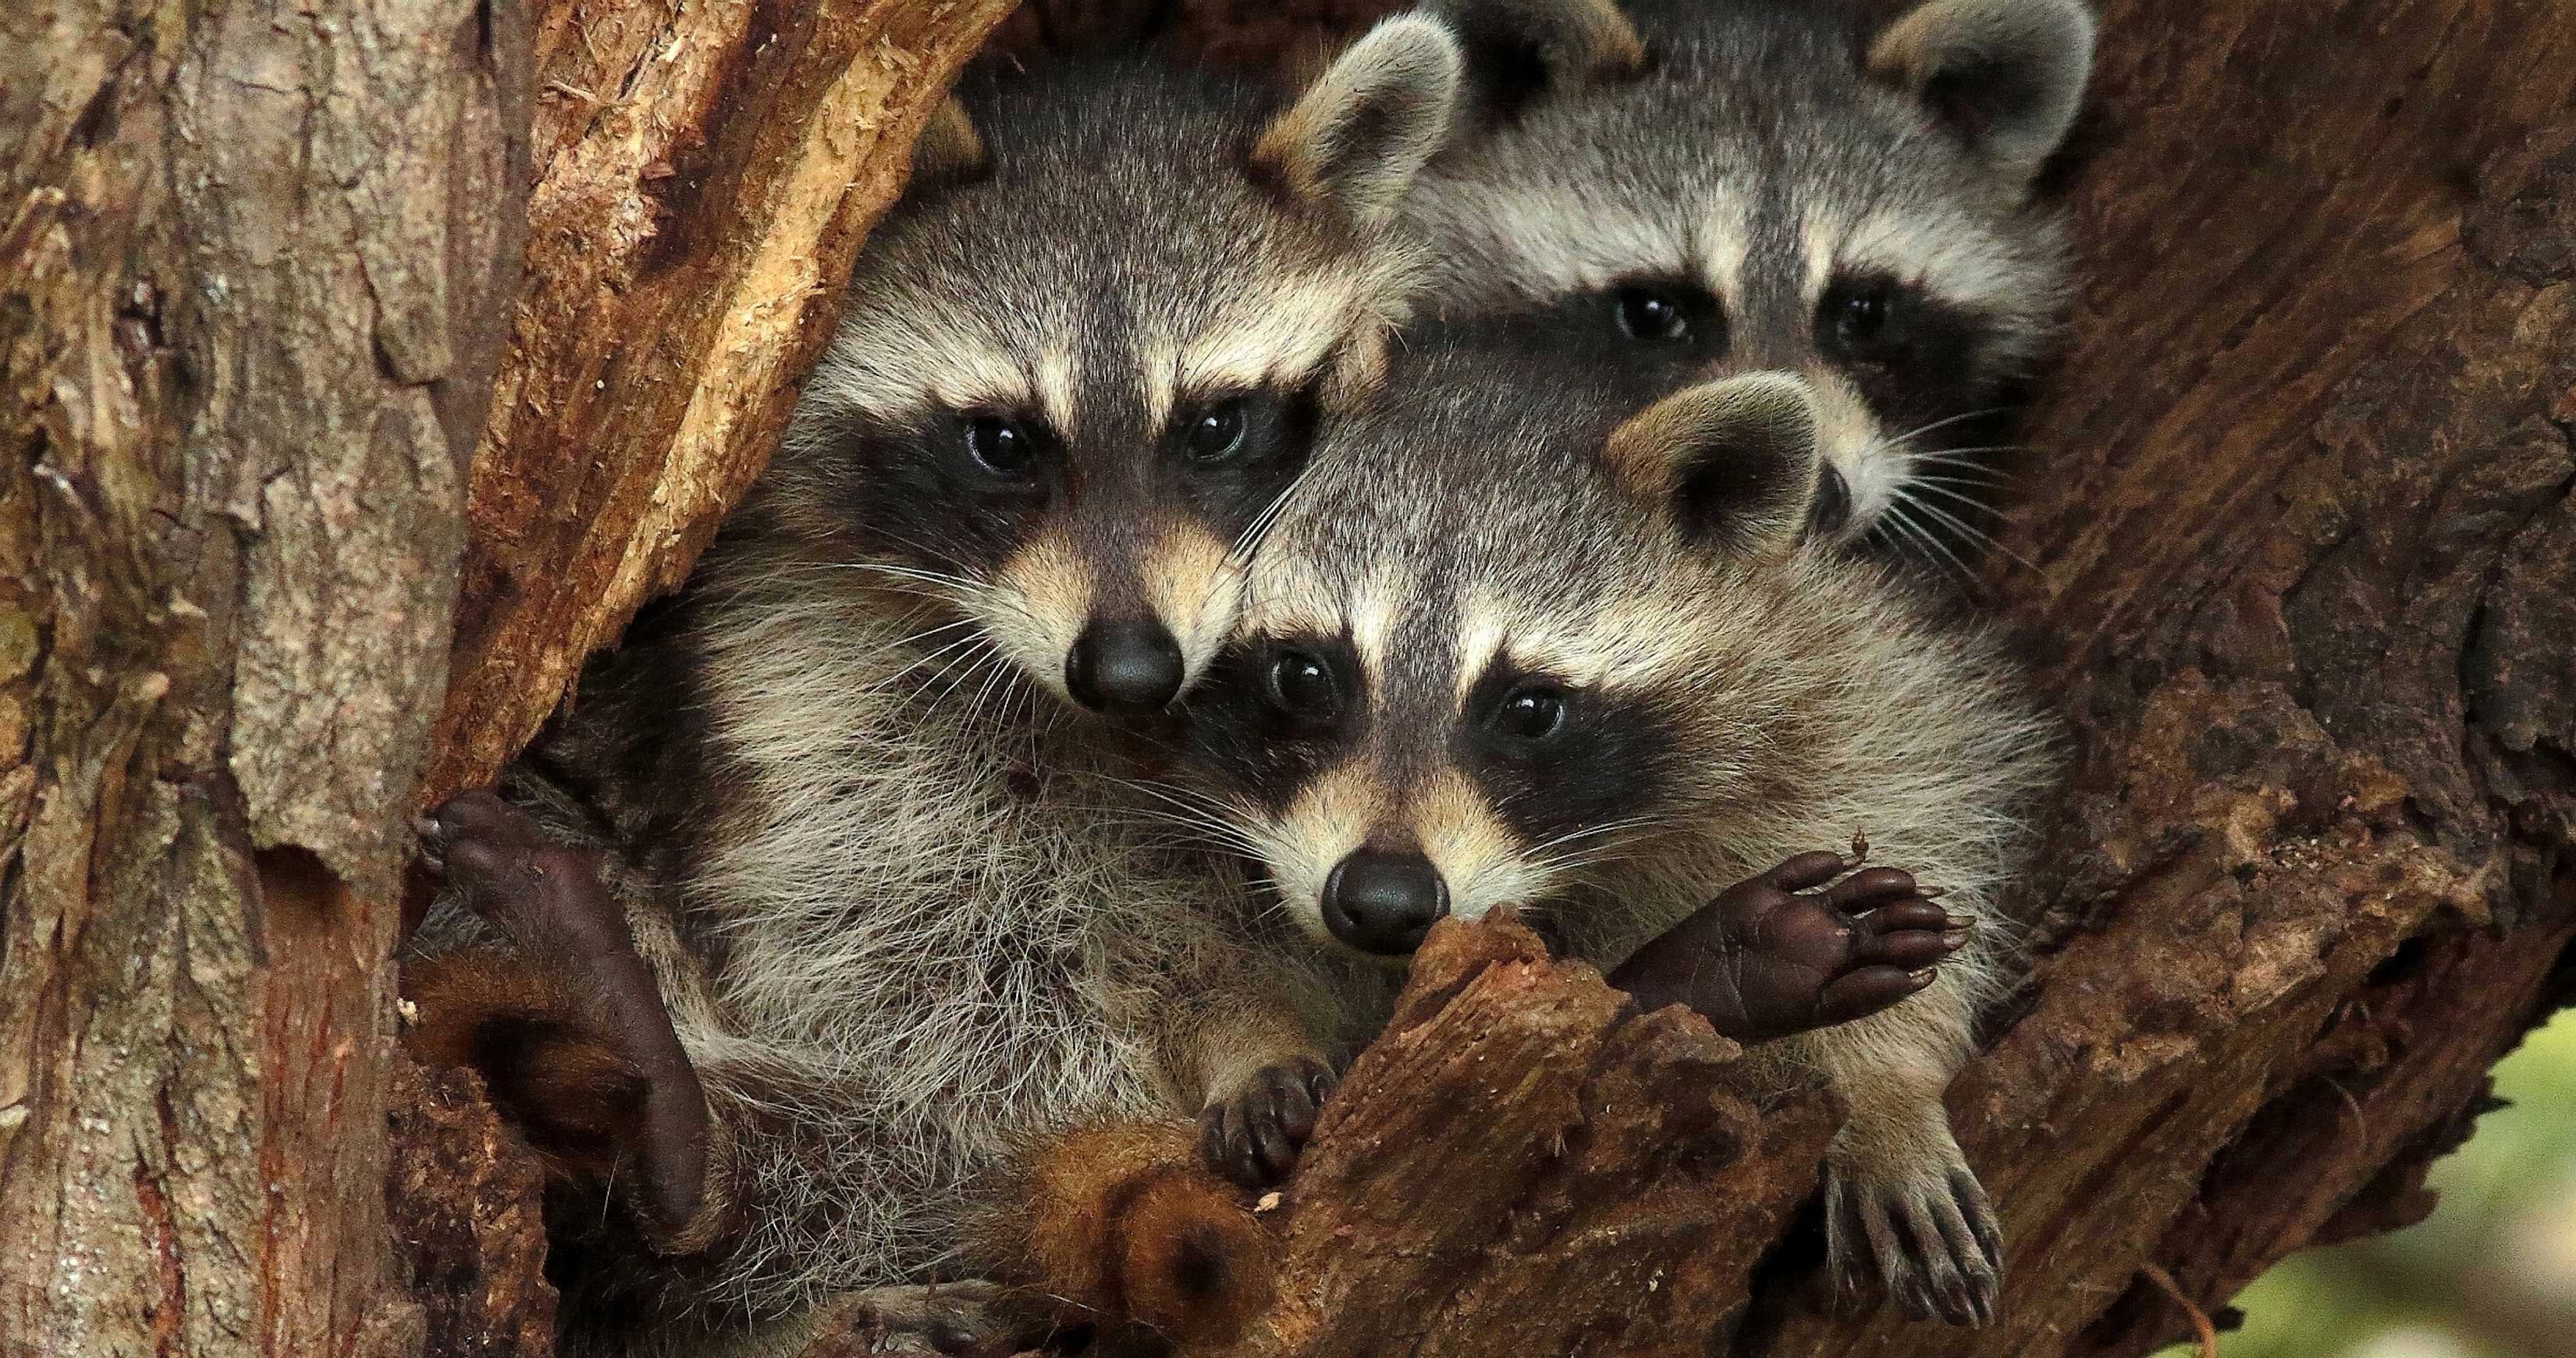 Three raccoons in a tree cavity.